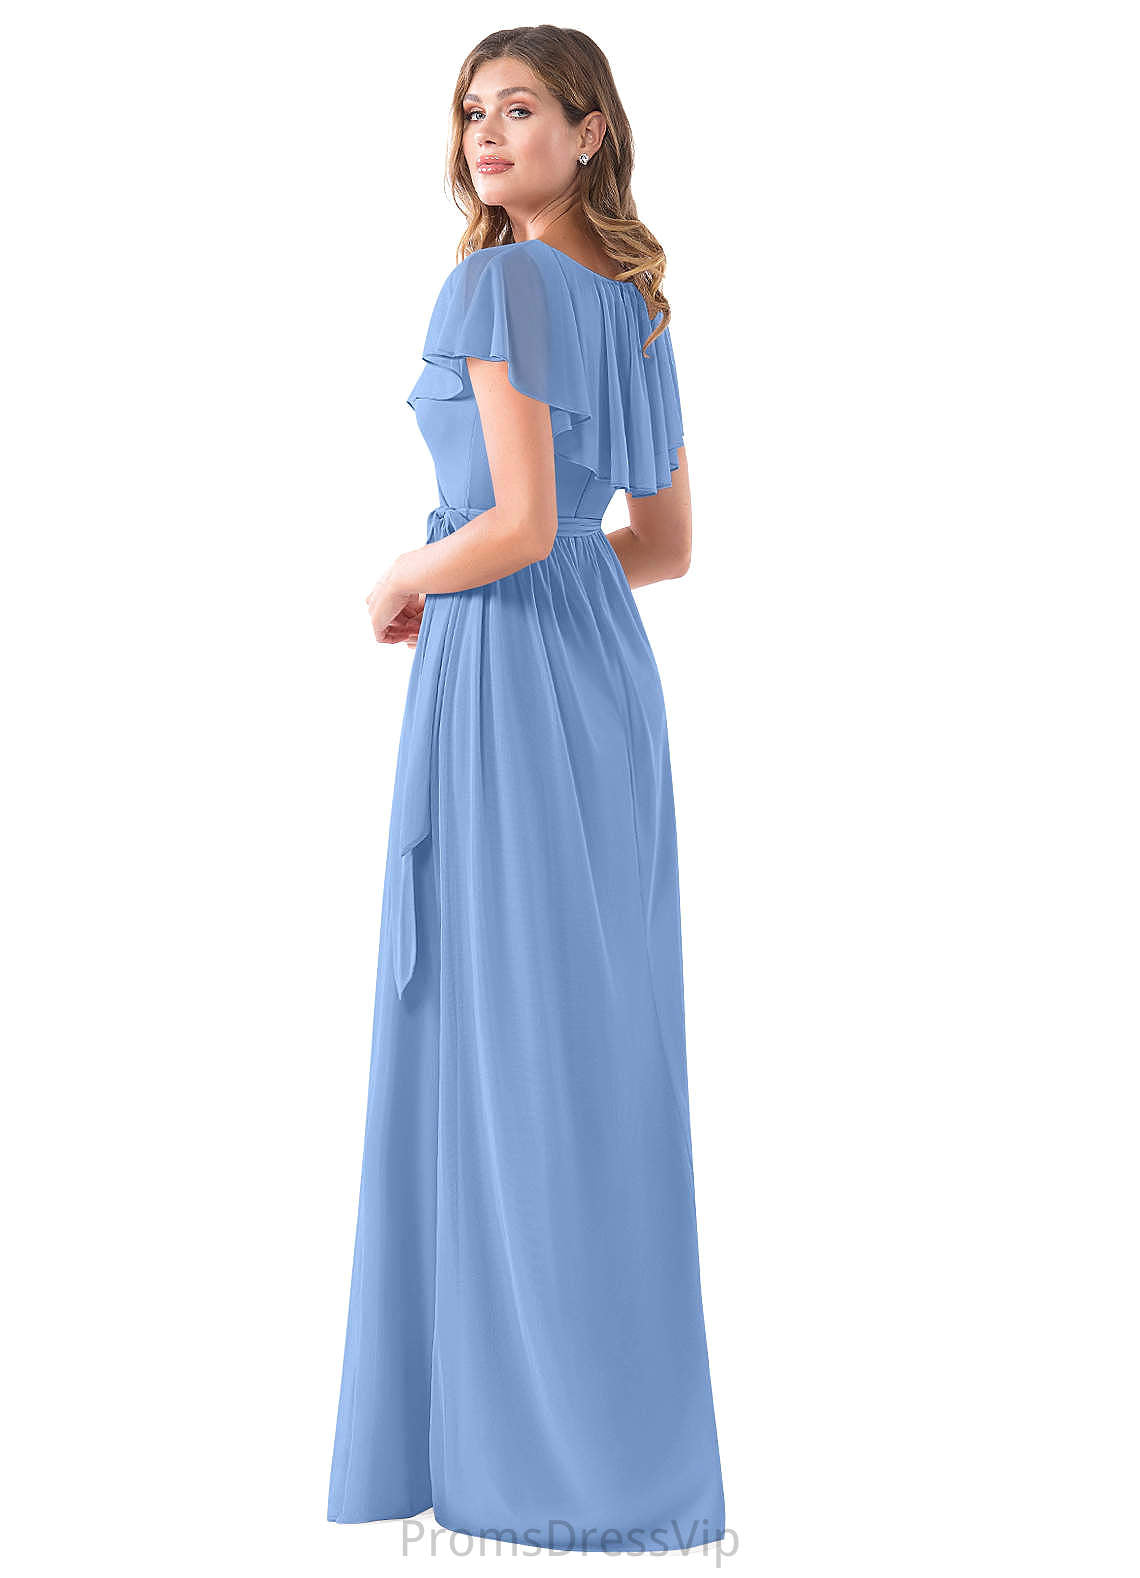 Kate Sleeveless V-Neck A-Line/Princess Natural Waist Floor Length Bridesmaid Dresses